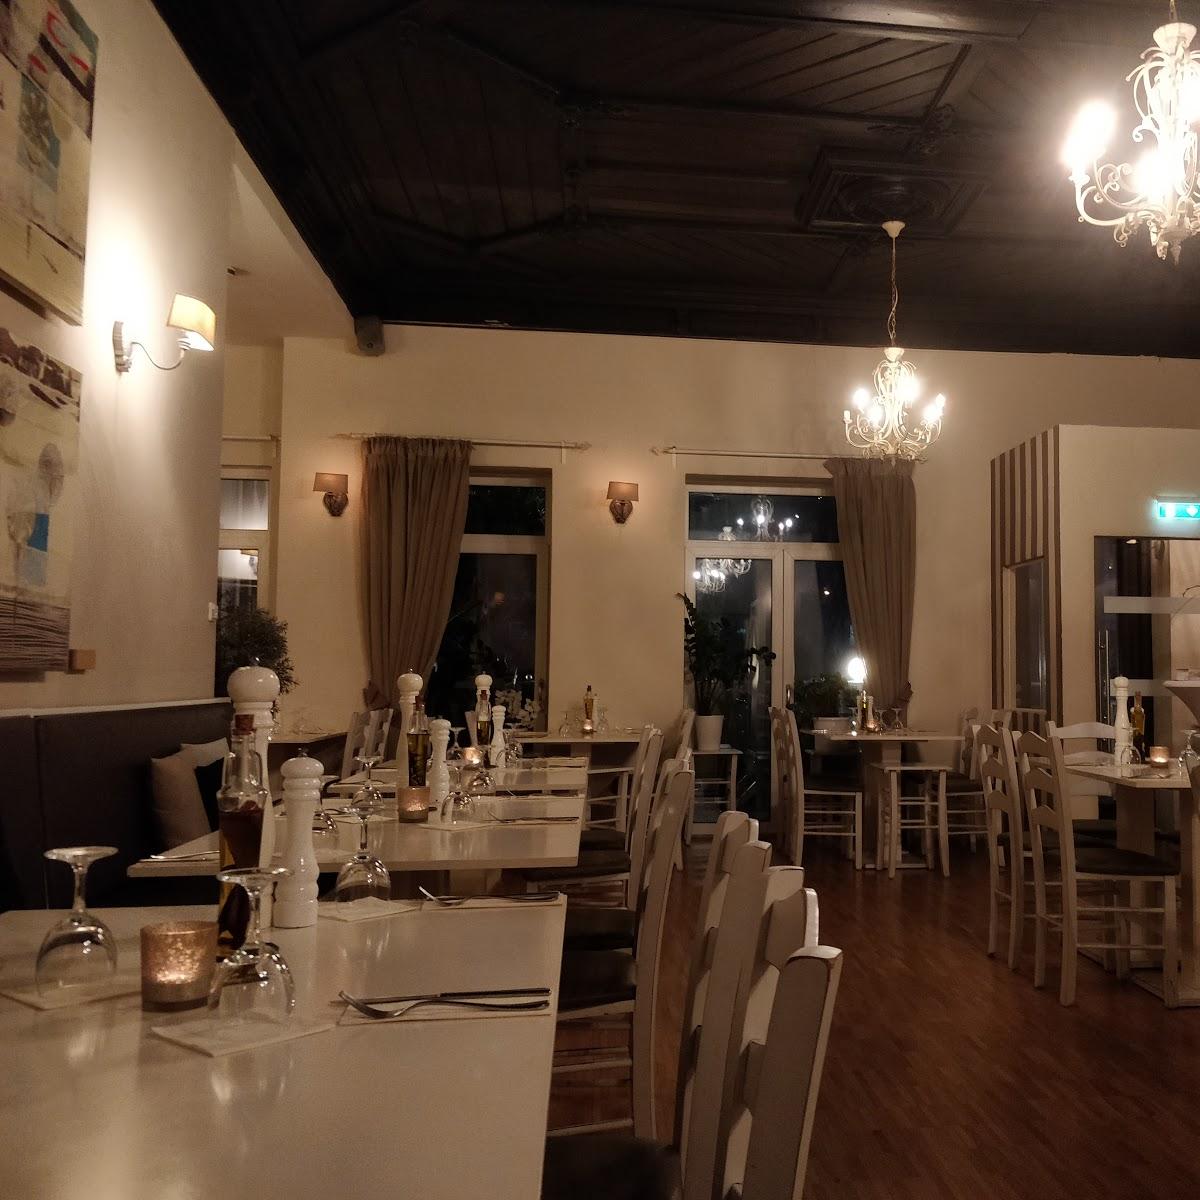 Restaurant "Mediterrane Kuzina" in Altena